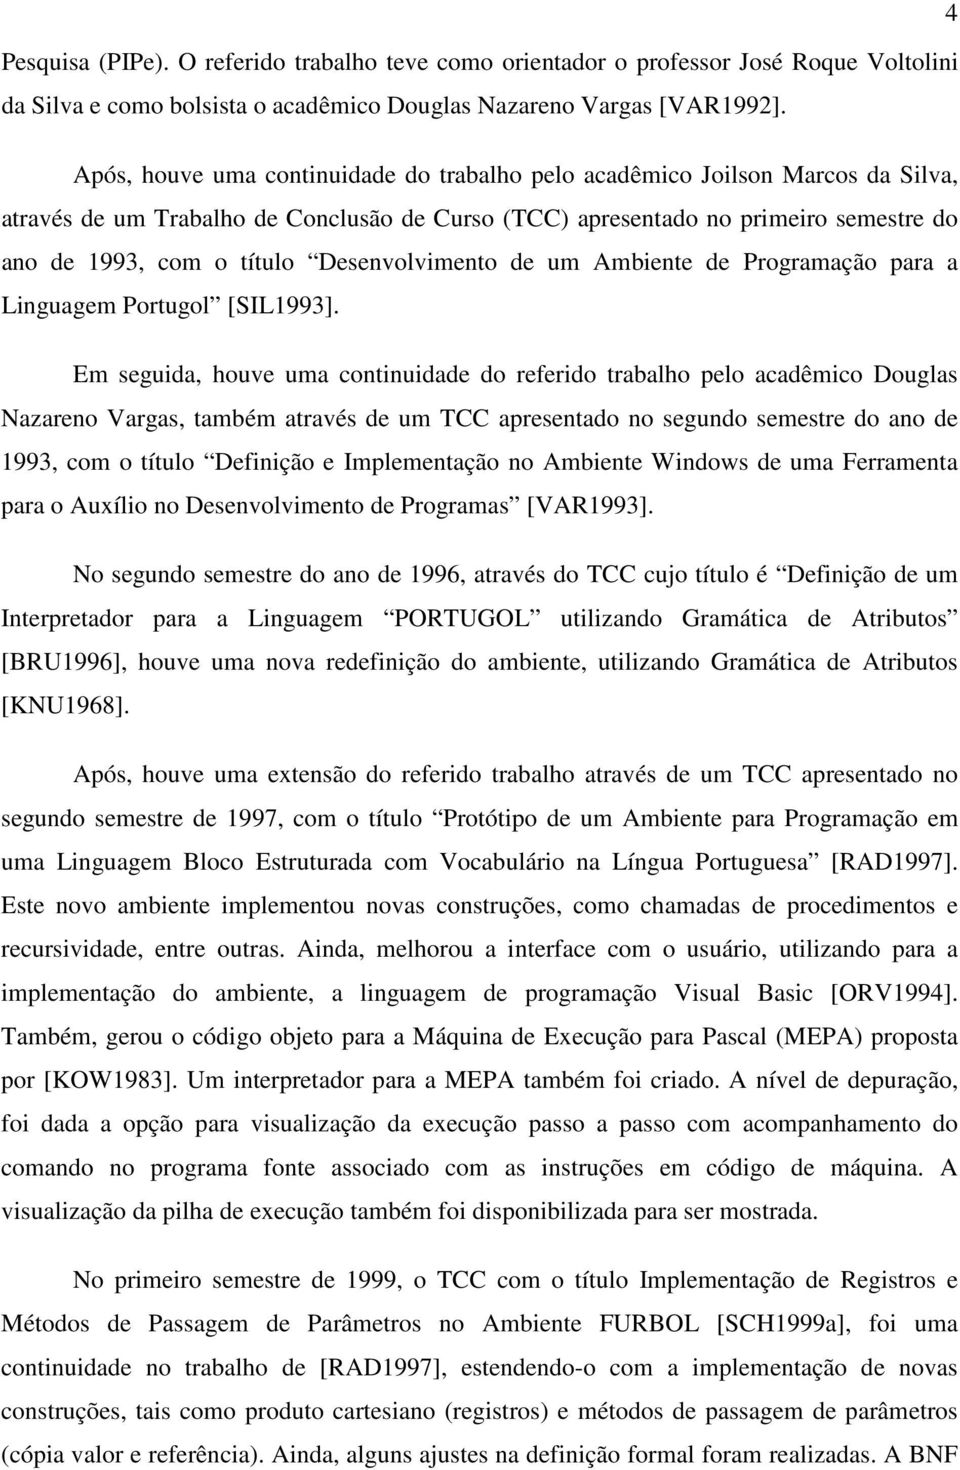 Desenvolvimento de um Ambiente de Programação para a Linguagem Portugol [SIL1993].